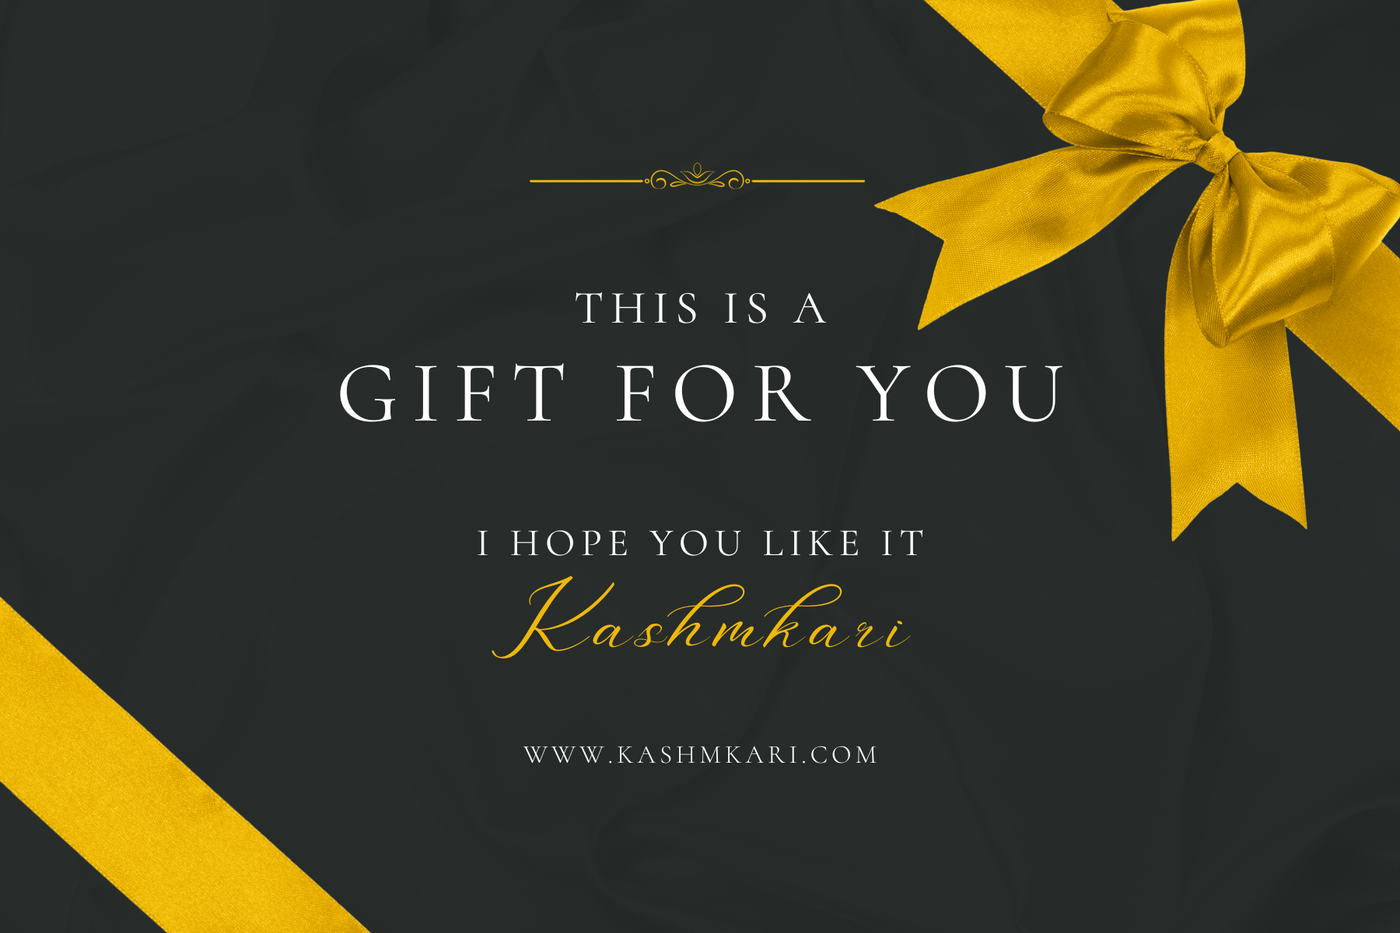 KashmKari Gift Card